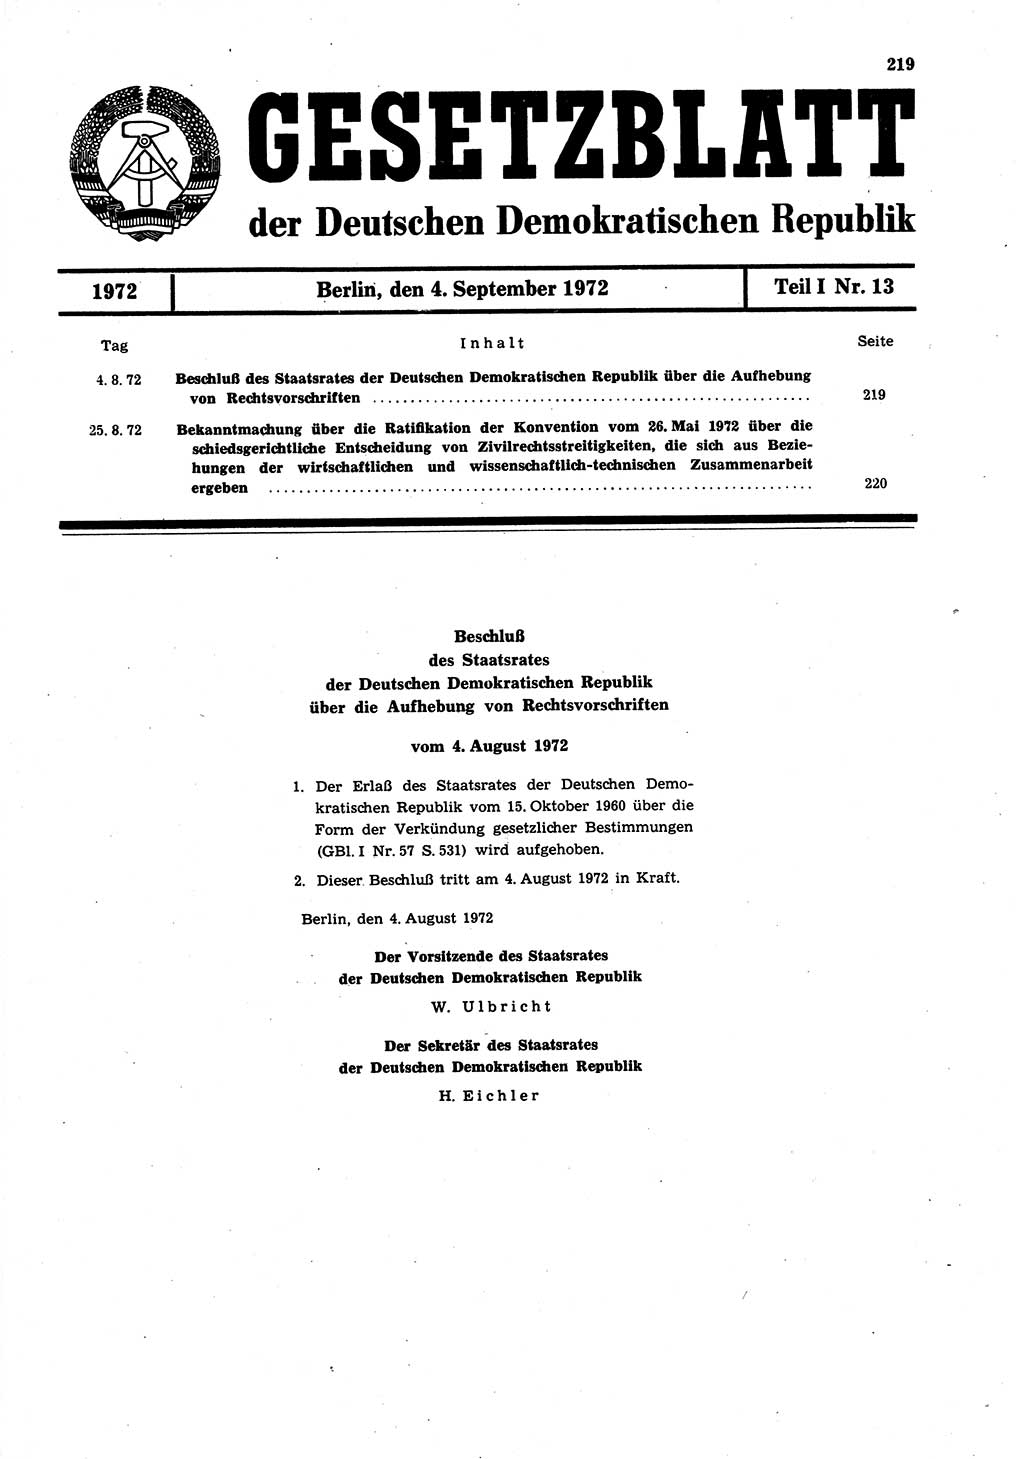 Gesetzblatt (GBl.) der Deutschen Demokratischen Republik (DDR) Teil Ⅰ 1972, Seite 219 (GBl. DDR Ⅰ 1972, S. 219)